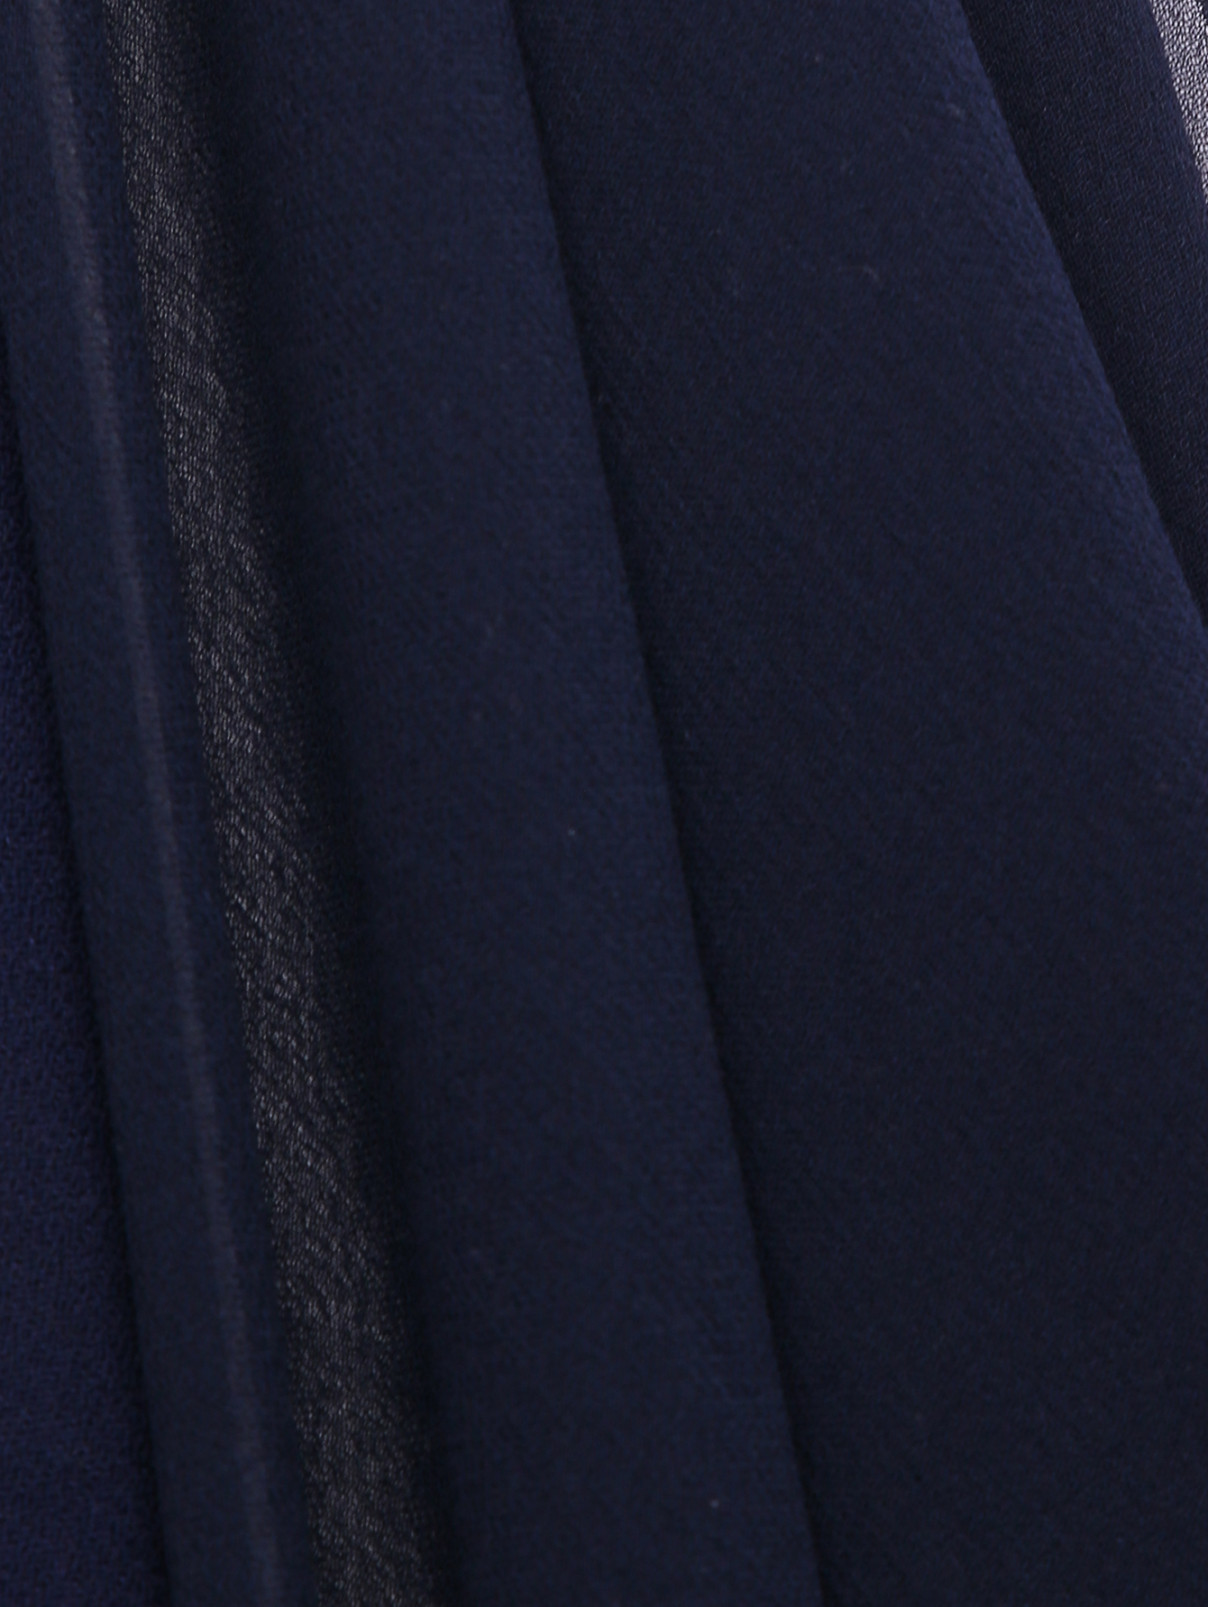 Платье-макси, декорированное кристаллами Jenny Packham  –  Деталь  – Цвет:  Синий